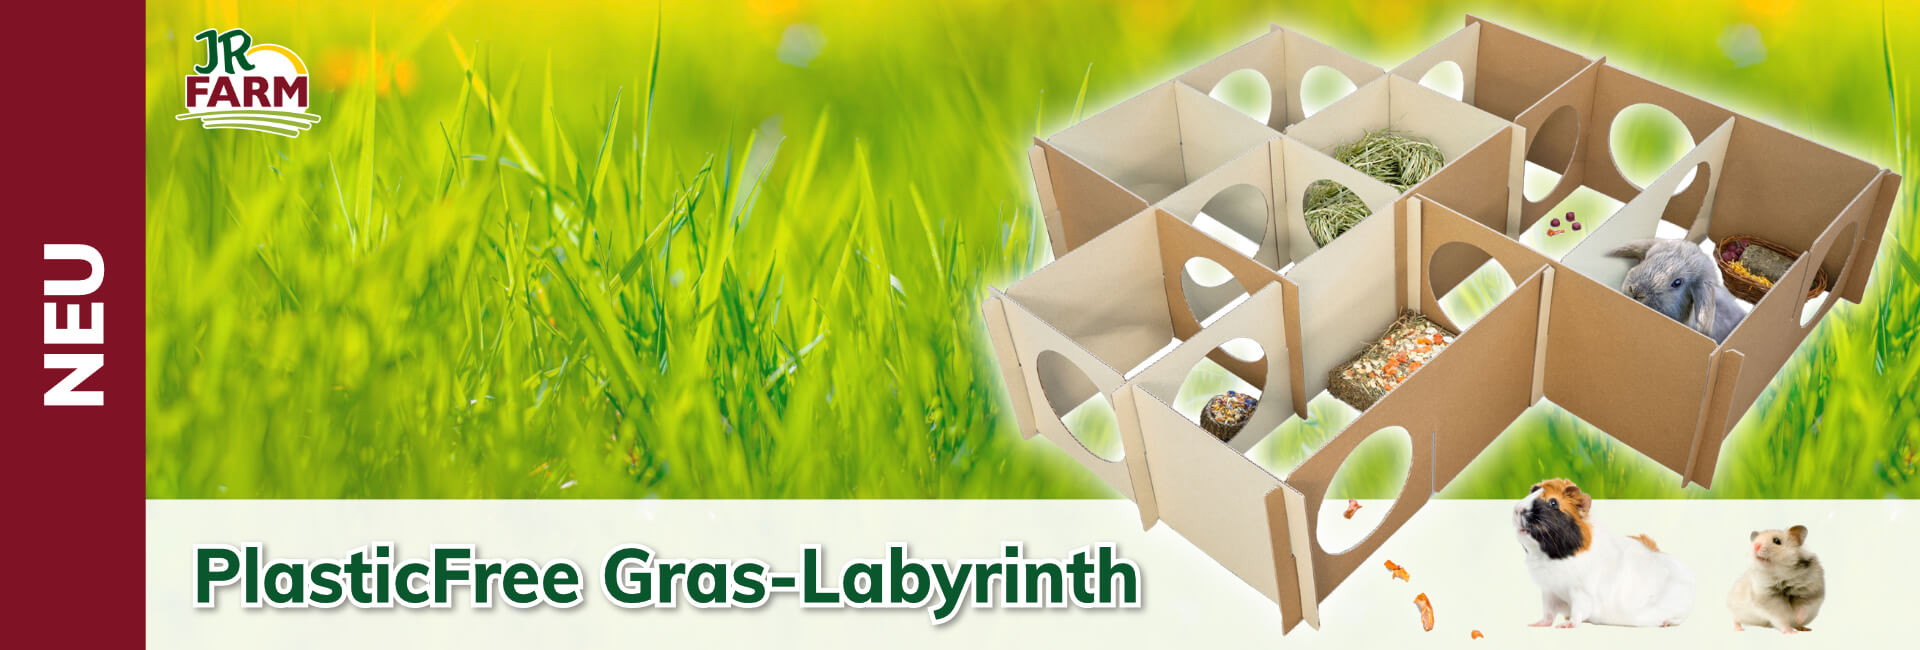 JR Farm PlasticFree Gras-Labyrinth